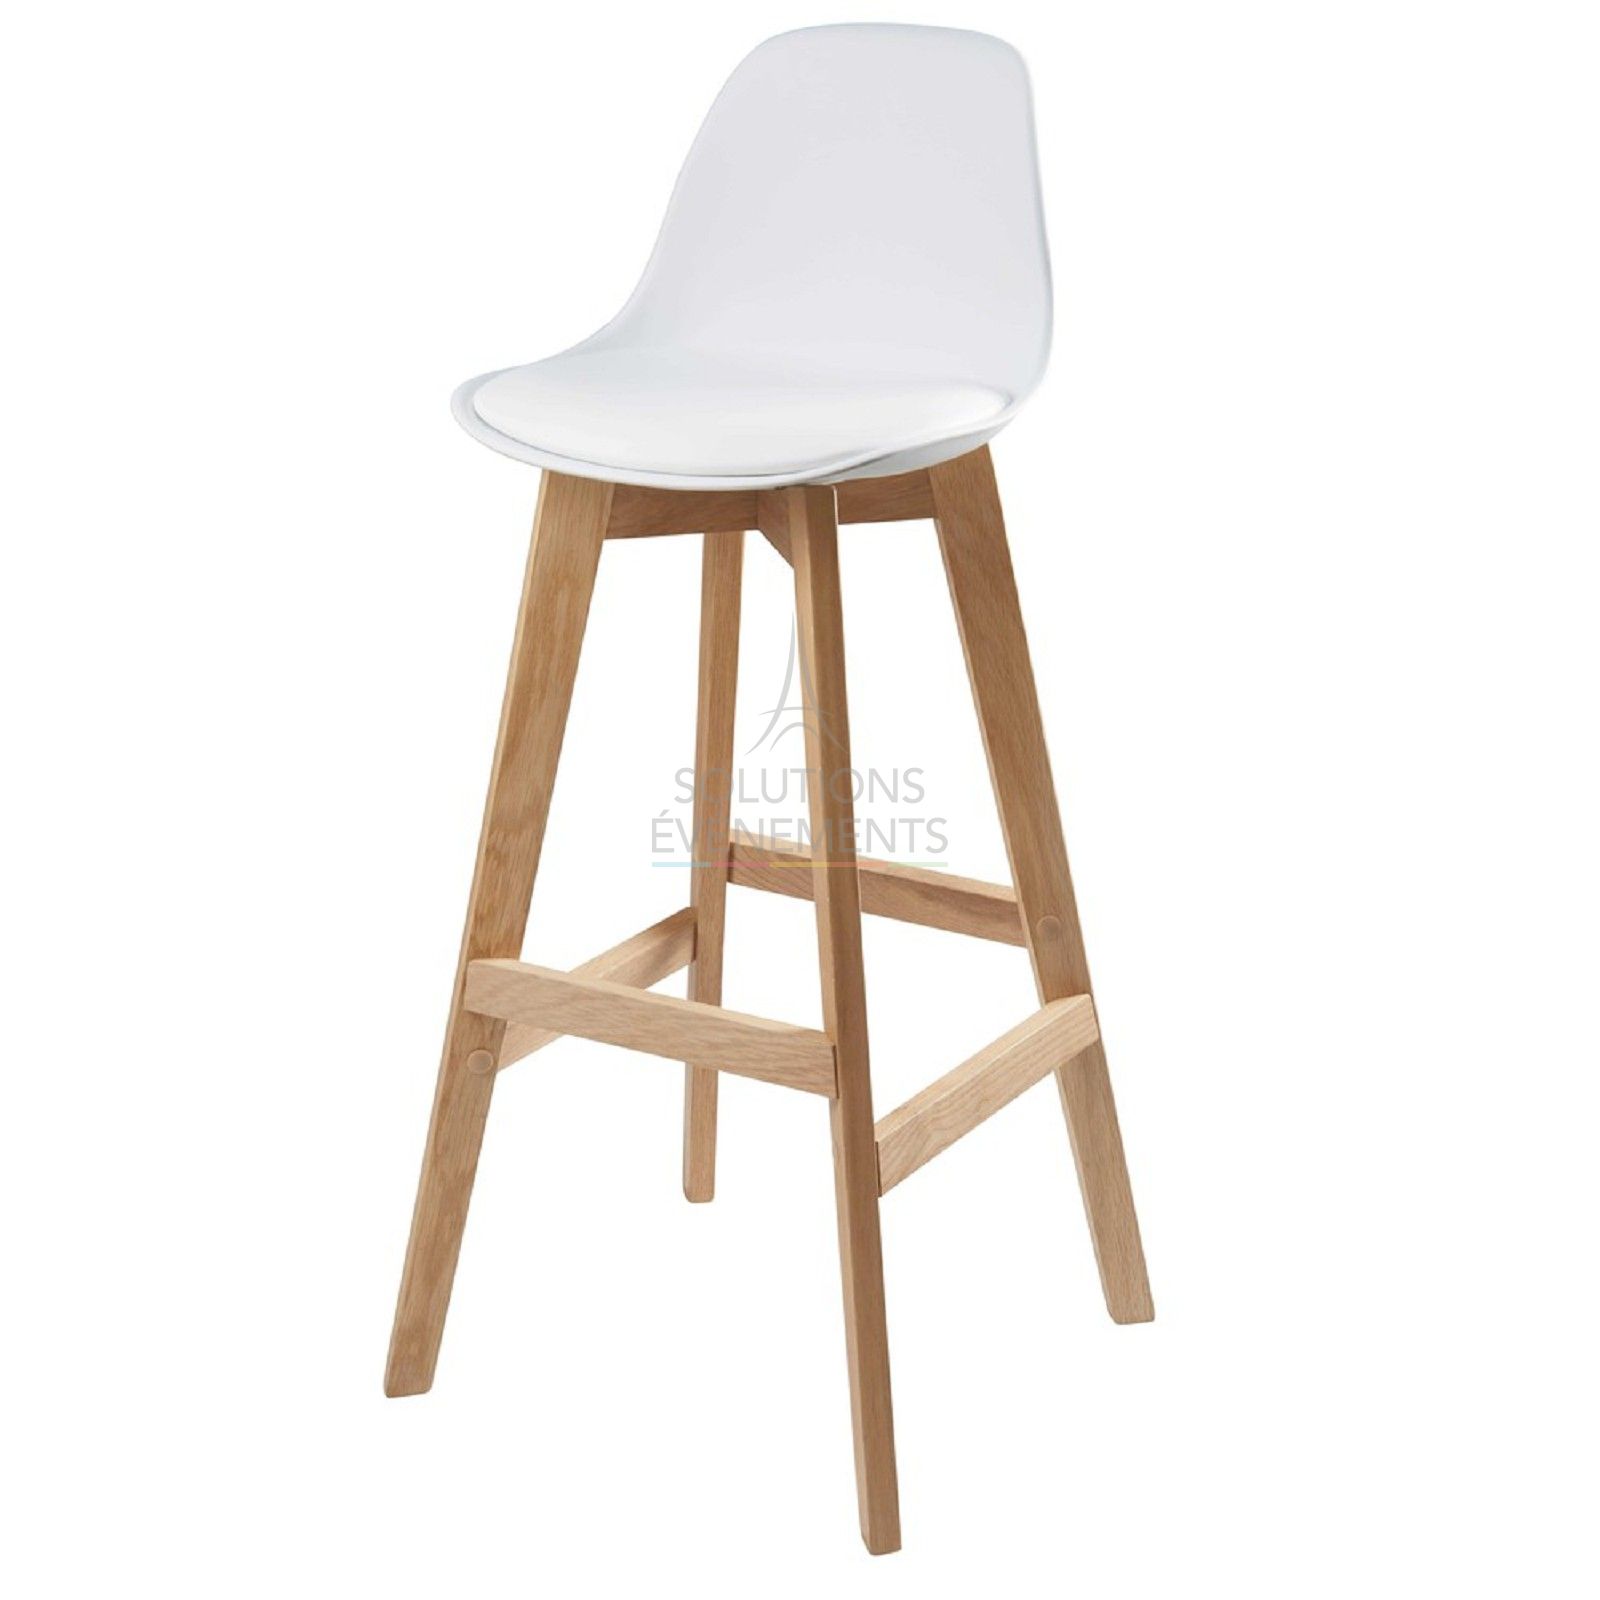 Scandinavian high chair rental